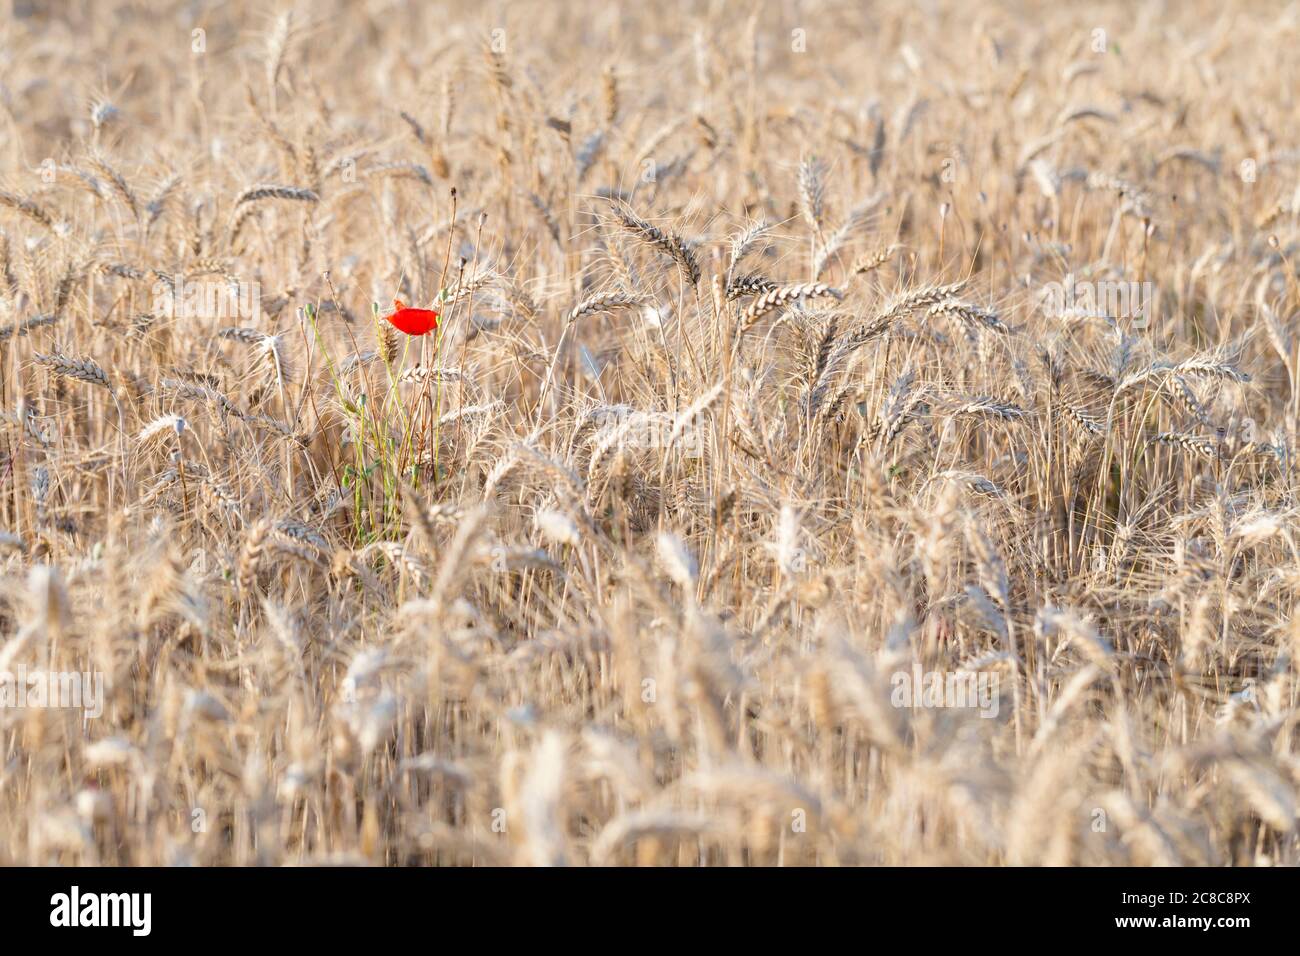 Un pavot rouge solitaire dans un champ de blé, Italie Banque D'Images